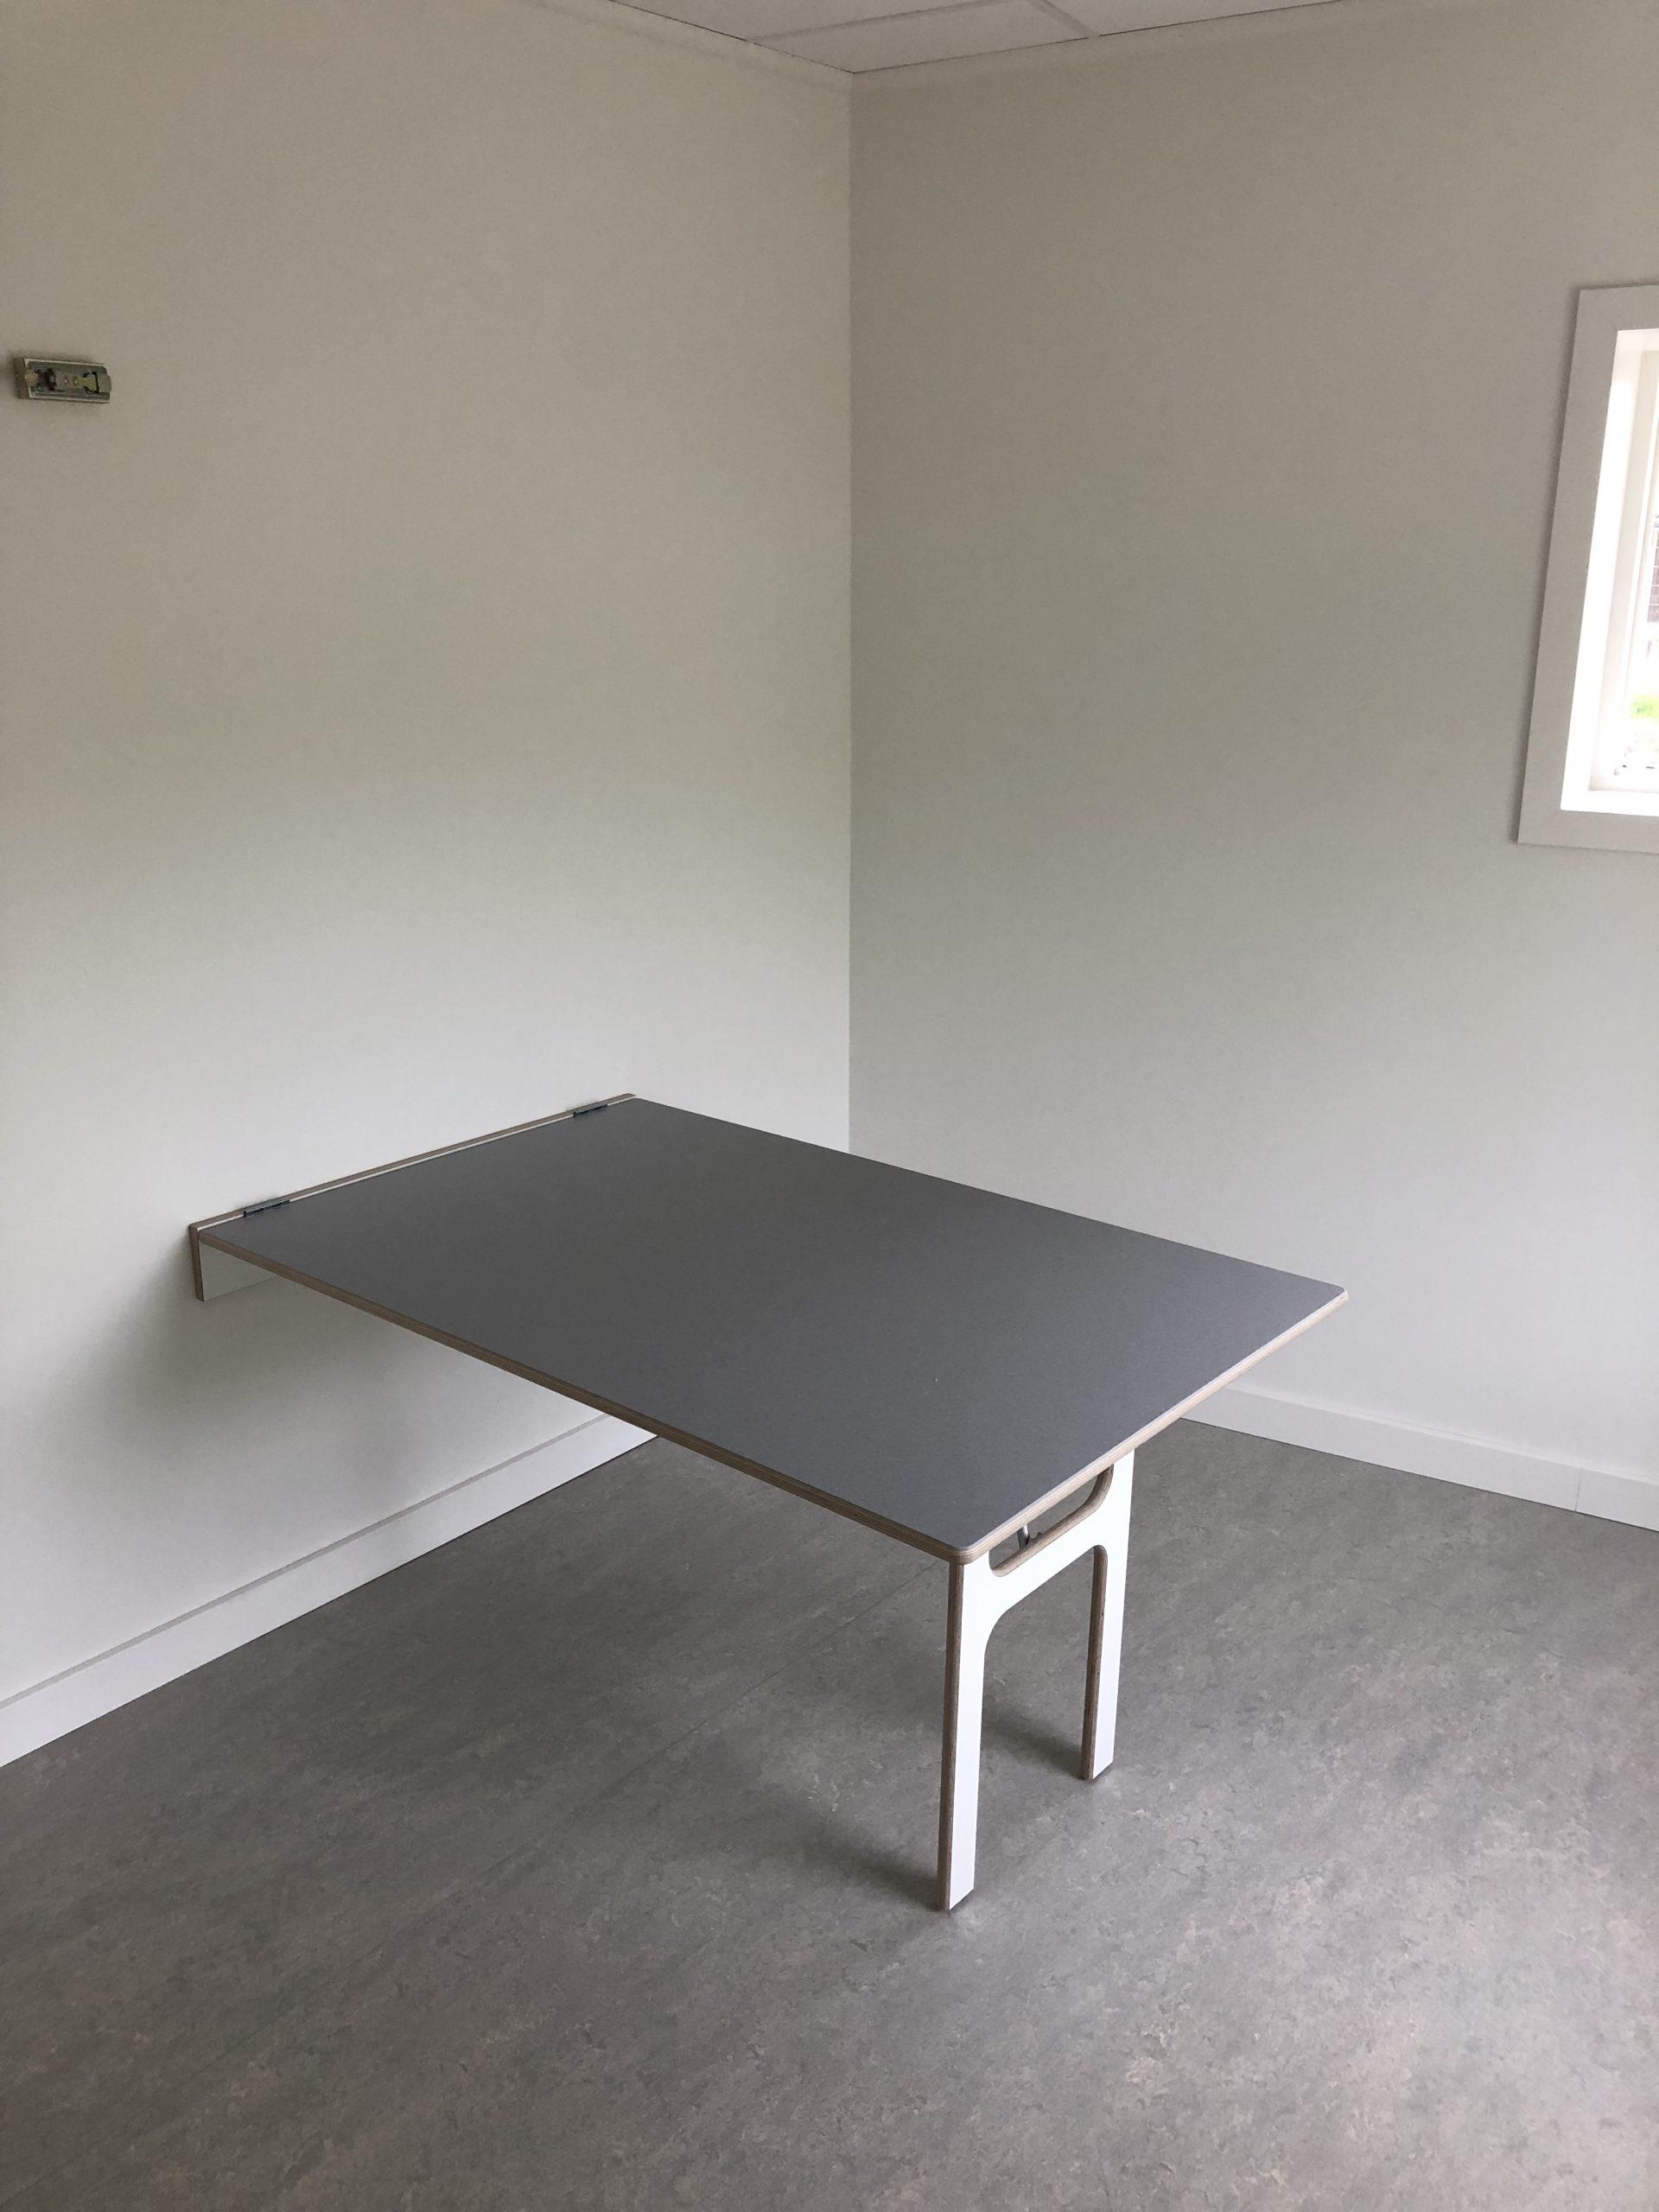 Væghængt bord med gummi på bordpladen